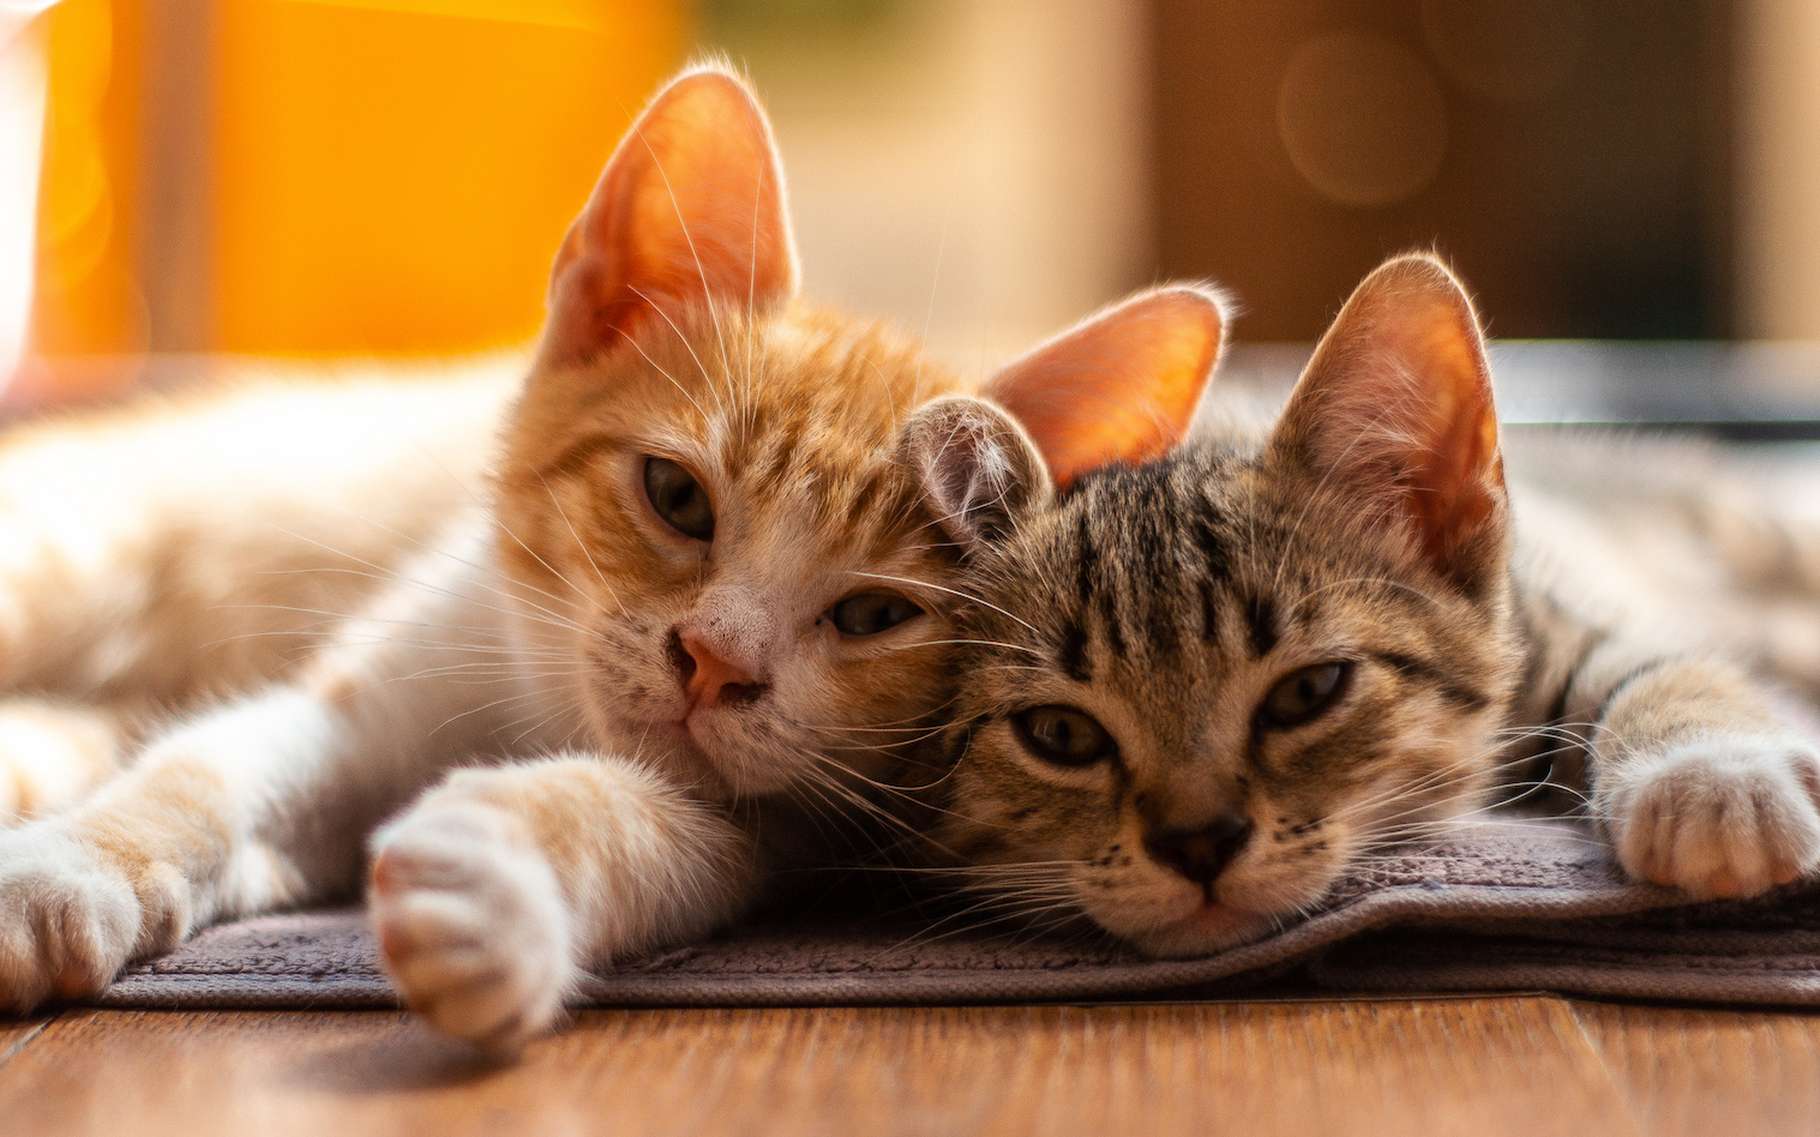 Des scientifiques ont percé le secret du ronronnement apaisant des chats !